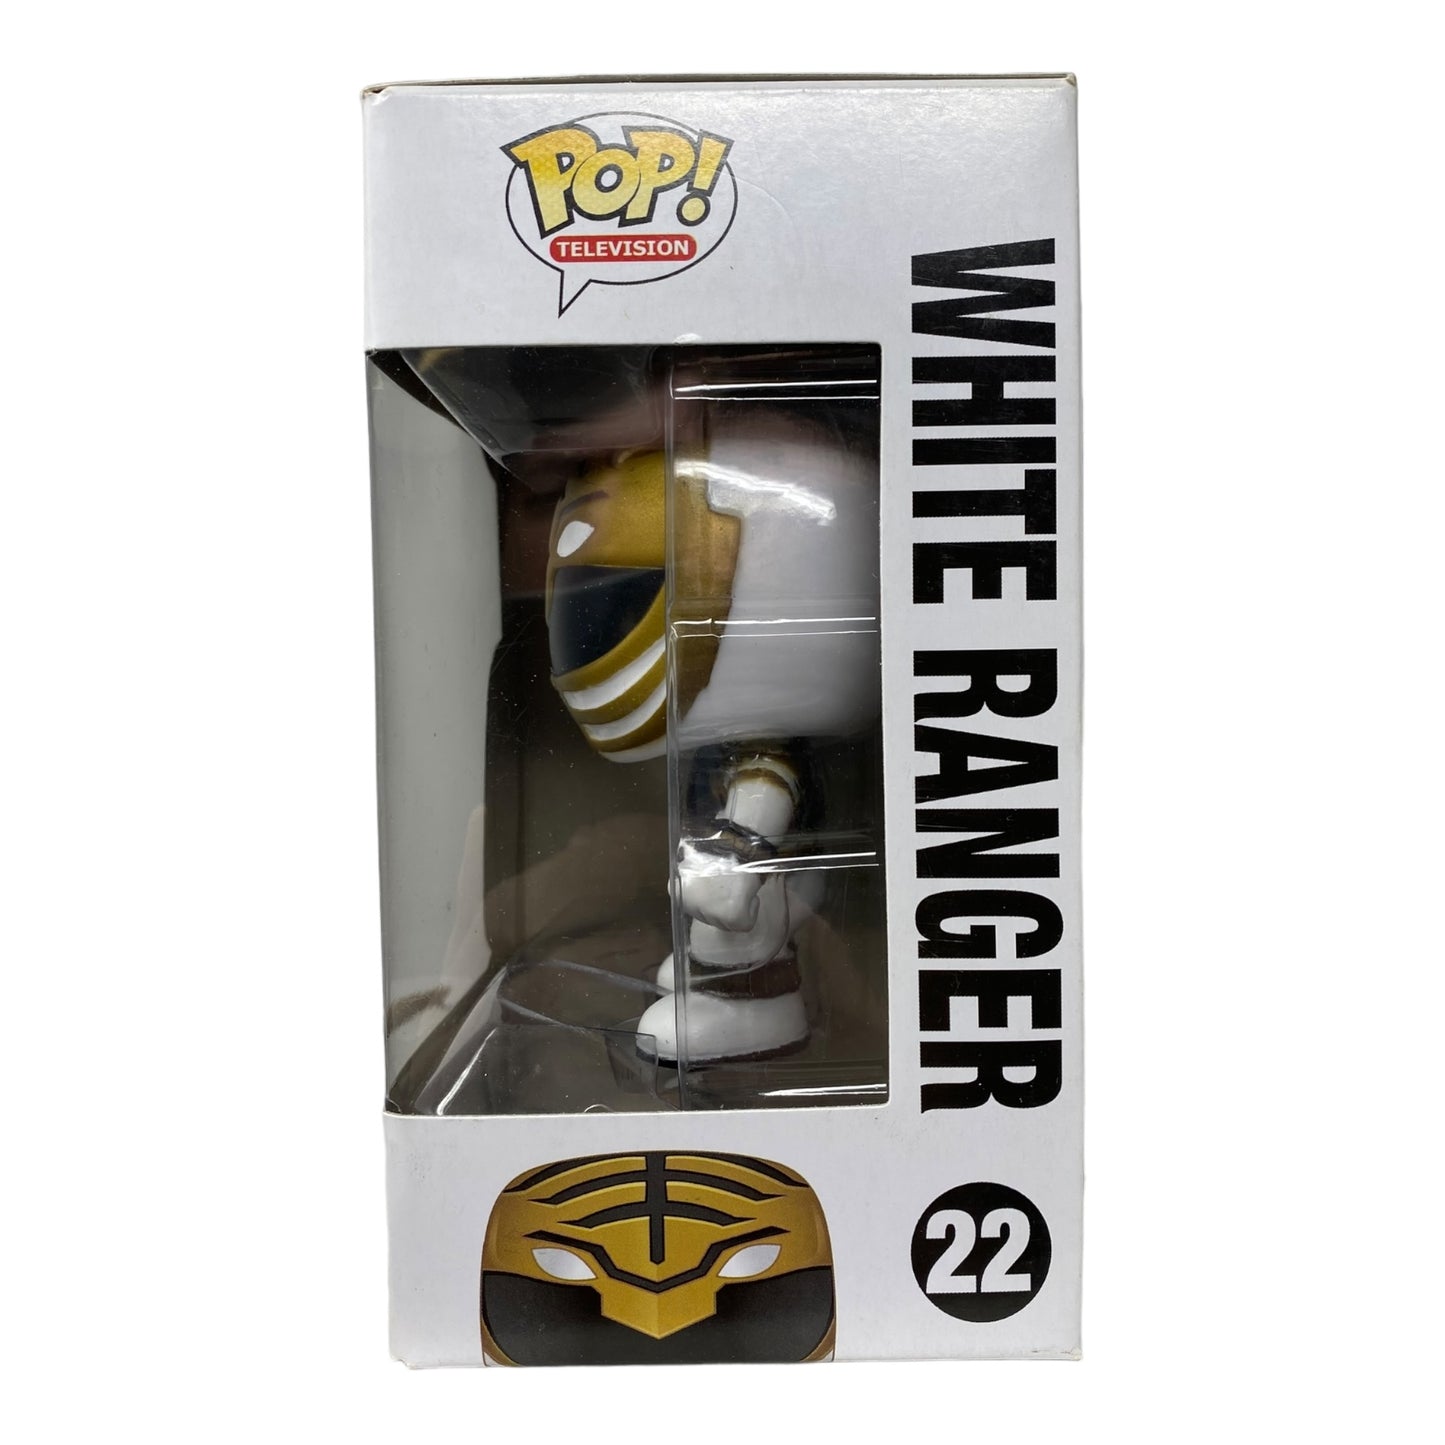 Sold - 2012 - White Ranger 22